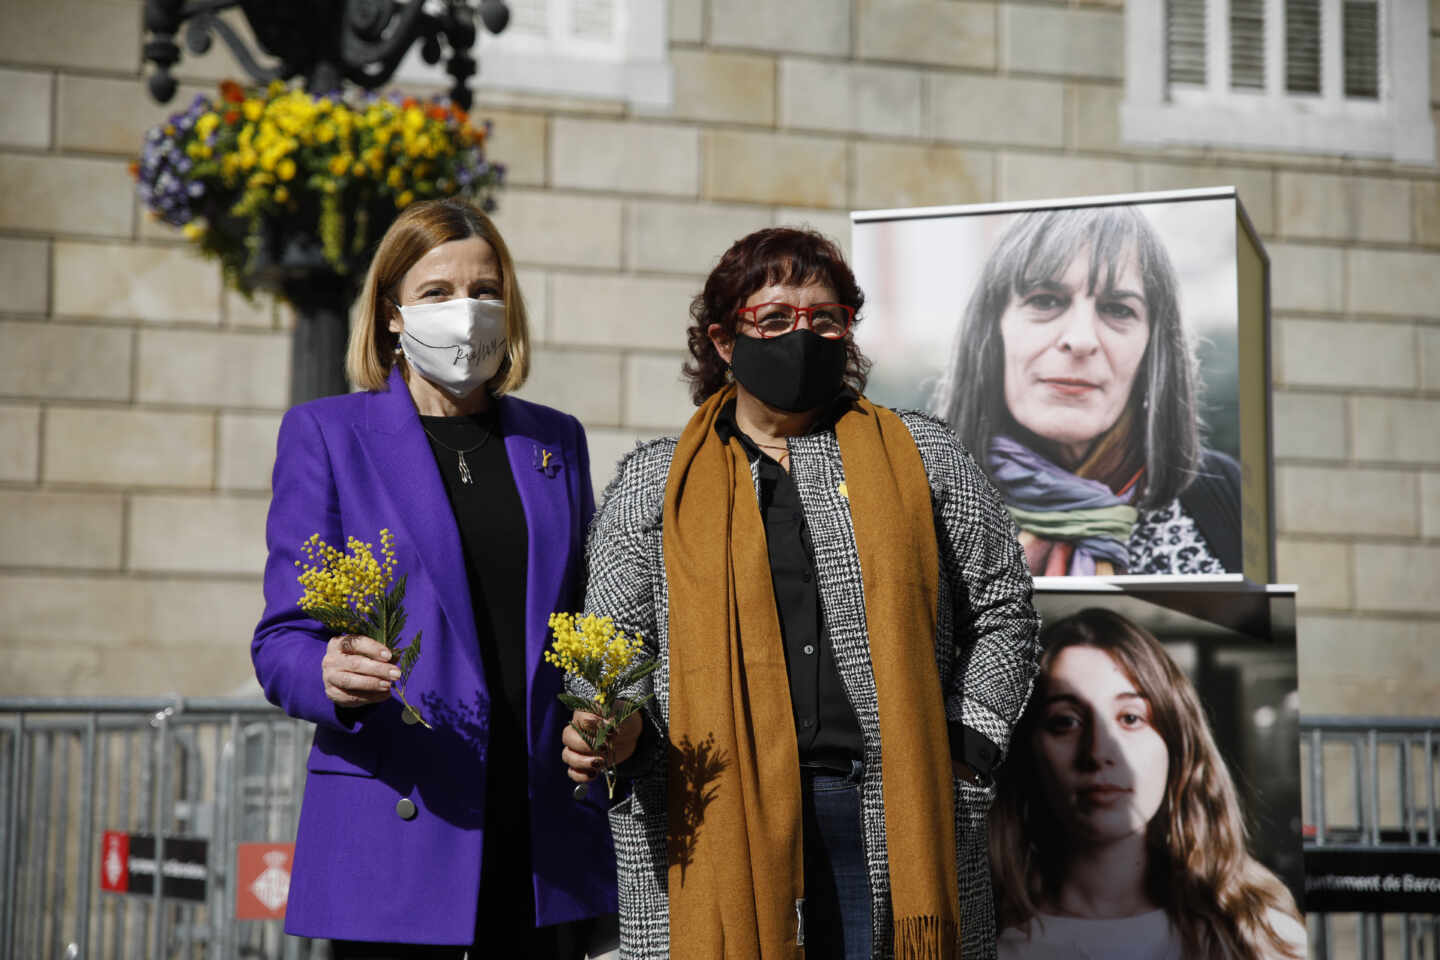 La expresidenta del Parlament, Carme Forcadell, y la exconsellera Dolors Bassa, durante un acto electoral sobre feminismo en la plaza Sant Jaume de Barcelona